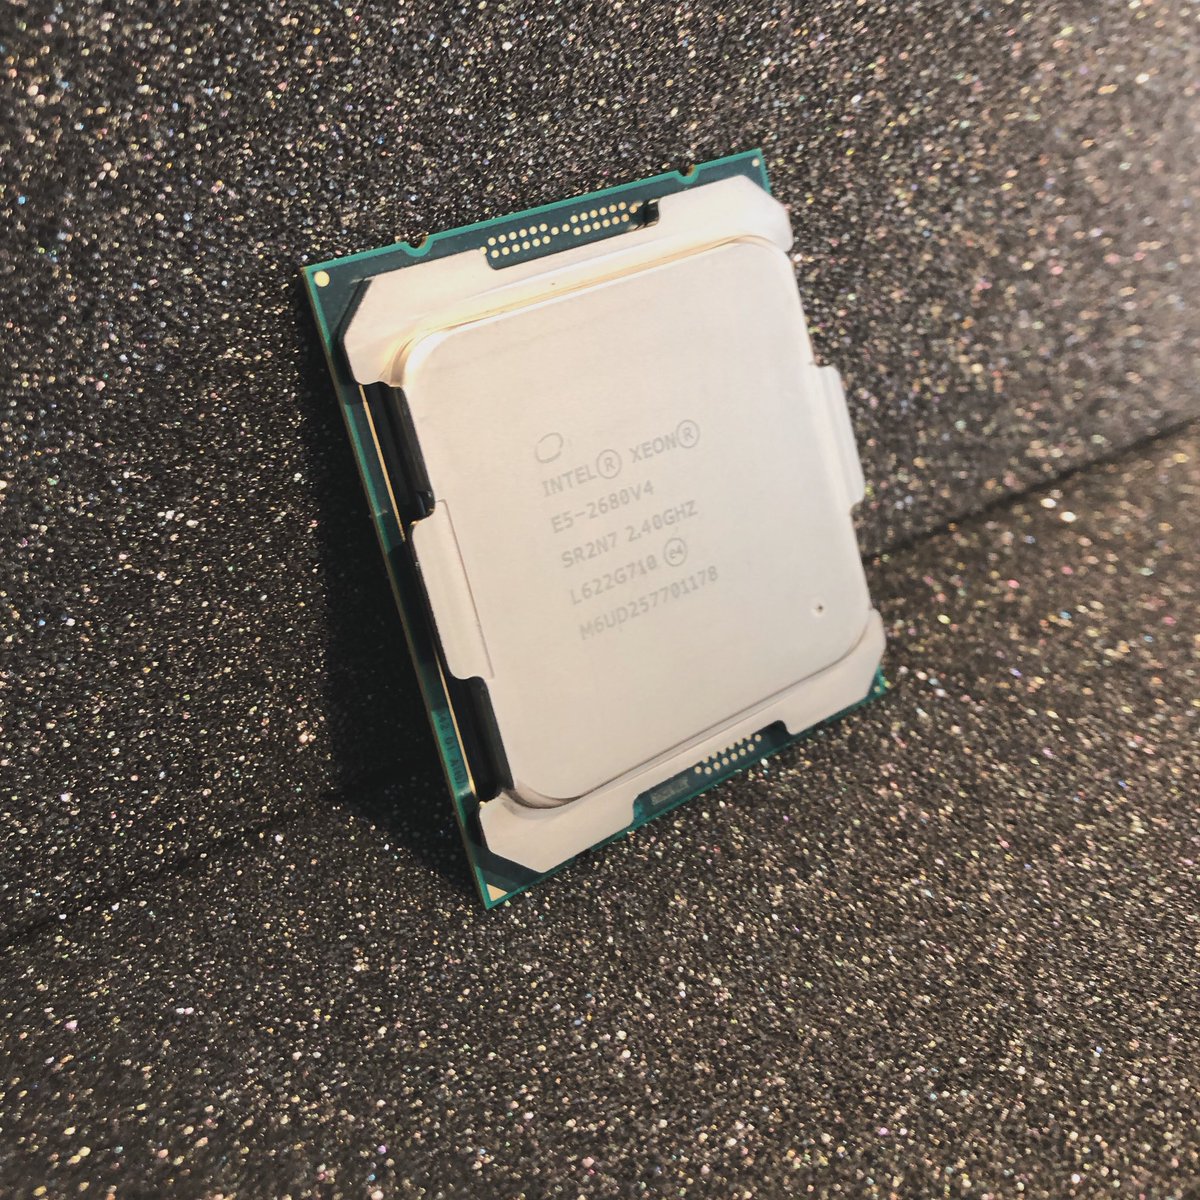 Die CPU, ist das Gehirn des Computers oder wie in diesem Fall, des Servers. 🧠
Hier haben wir eine Intel Xeon E5-2680v4 CPU welche bald in einem #dedicatedserver ein neues Leben bekommt und dem Kunden Leistung und maximale Zuverlässigkeit für seine Projekte bieten wird. 💪